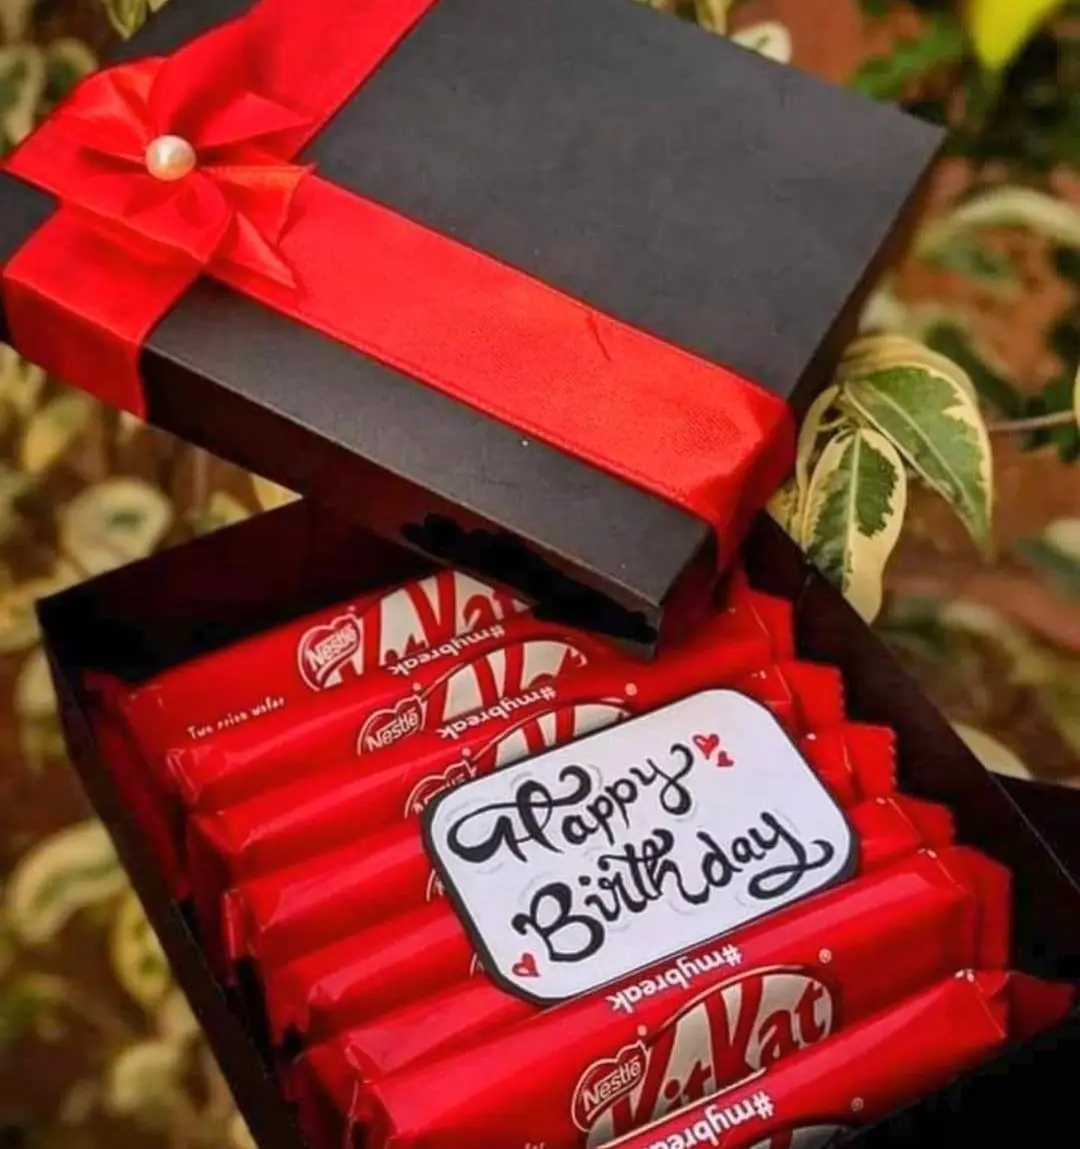 NESTLE Kit Kat & Milk Chocolates & I love you cake topper Combo Price in  India - Buy NESTLE Kit Kat & Milk Chocolates & I love you cake topper Combo  online